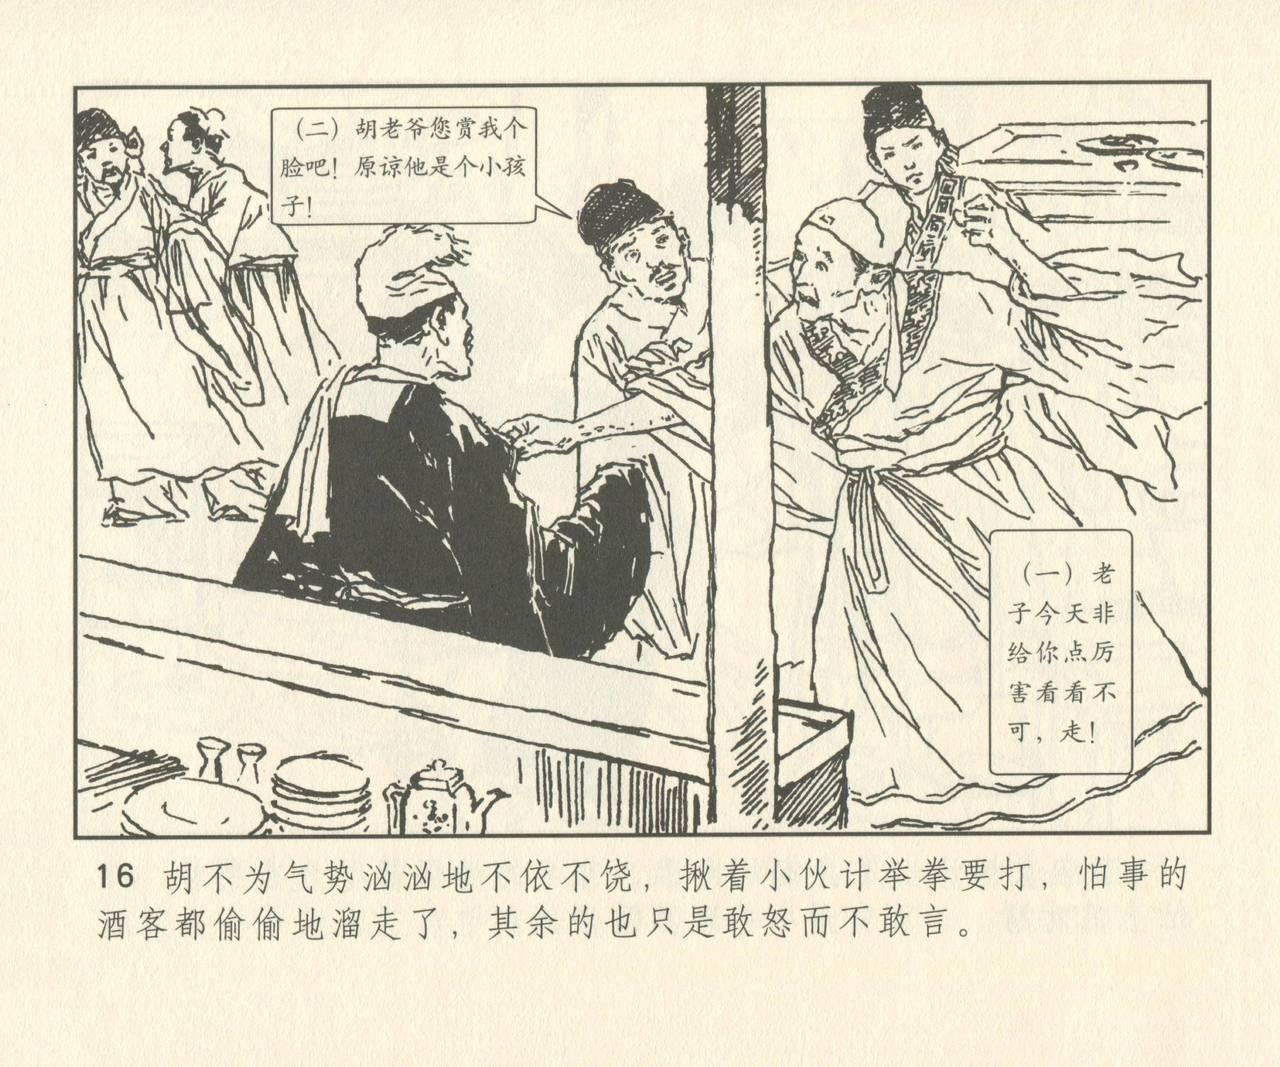 聊斋志异 张玮等绘 天津人民美术出版社 卷二十一 ~ 三十 144